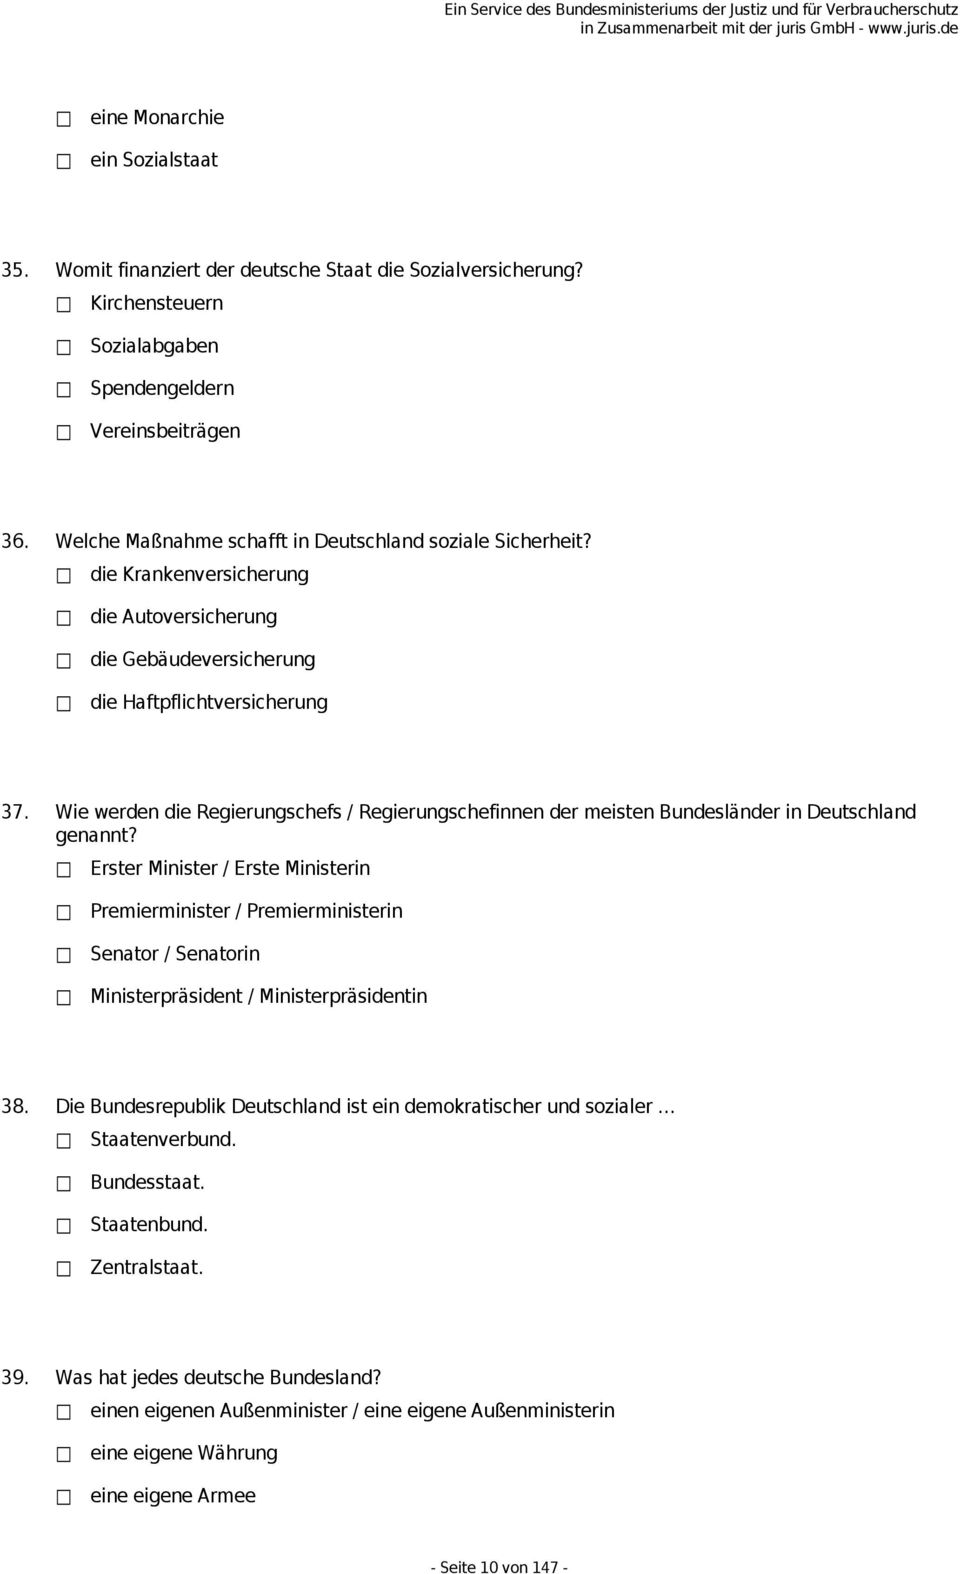 Wie werden die Regierungschefs / Regierungschefinnen der meisten Bundesländer in Deutschland genannt?